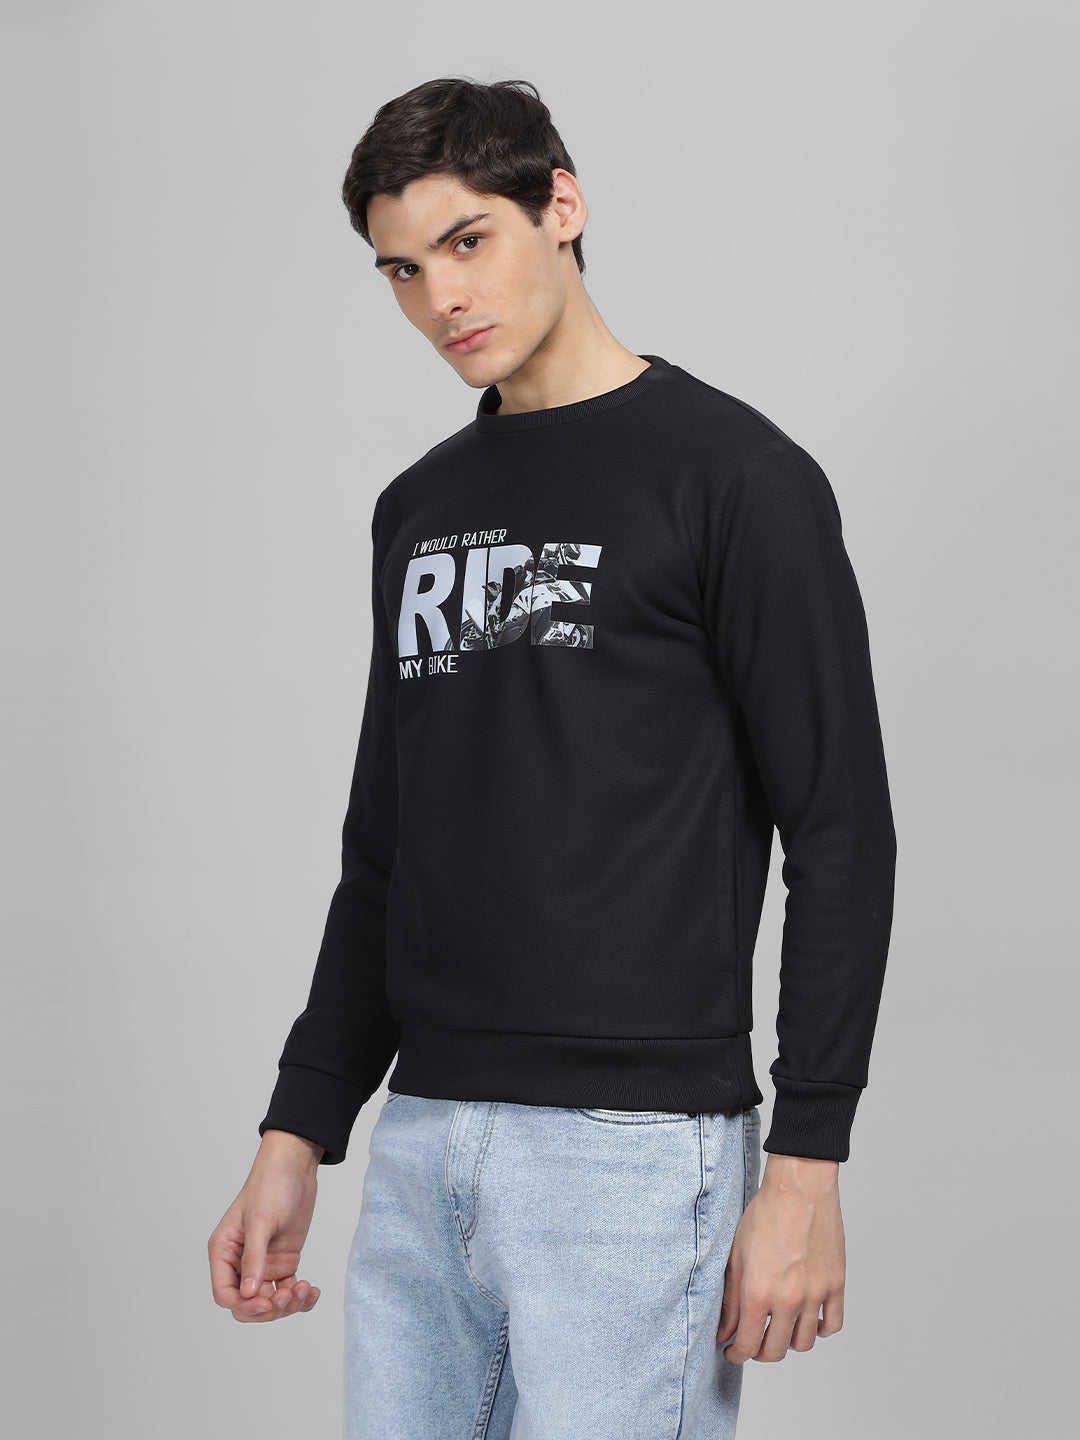 Men's Black Printed Round Neck Sweatshirt